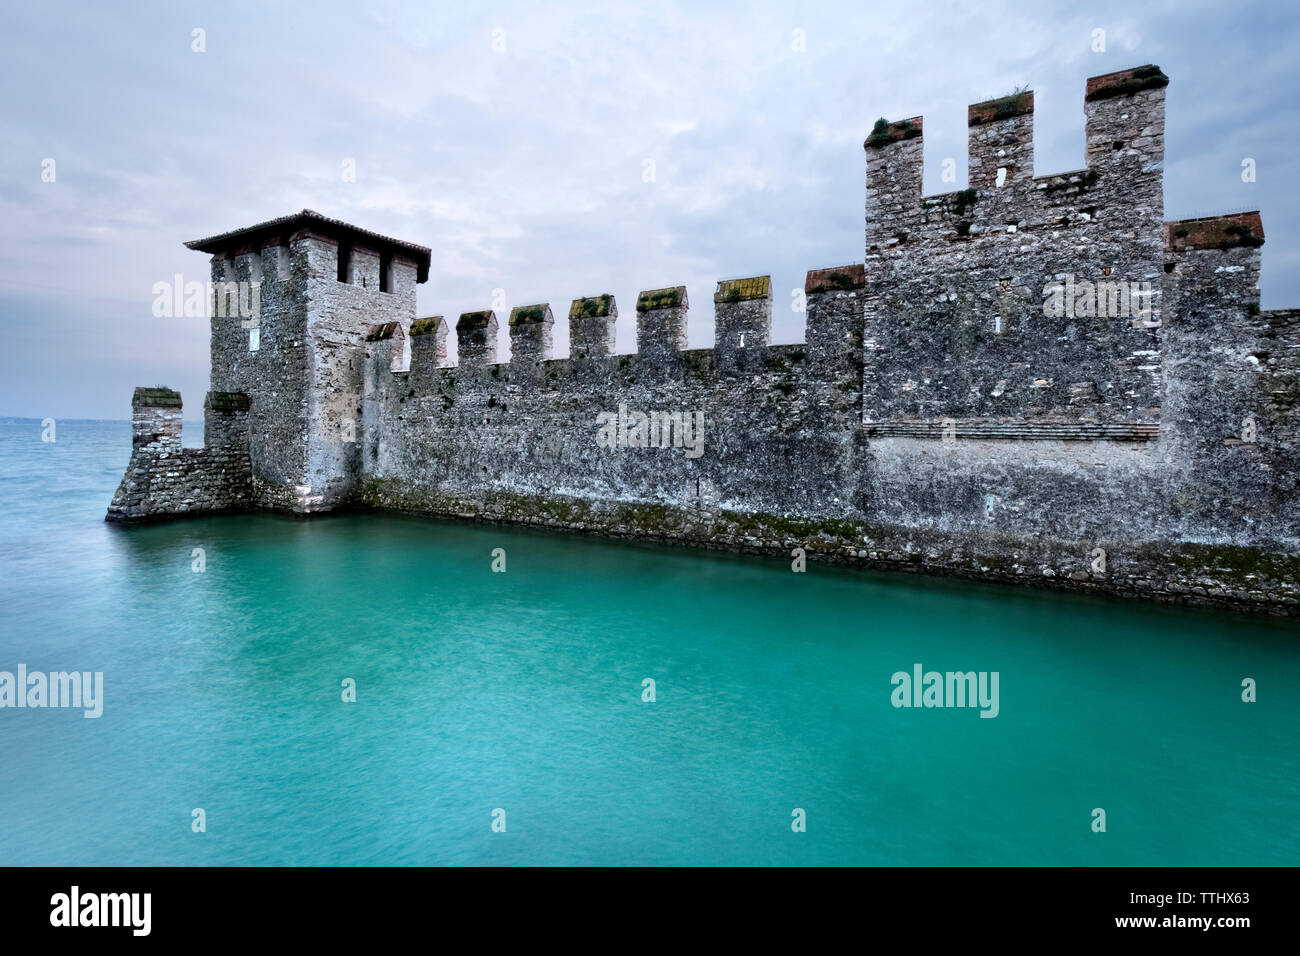 Le mura merlate del castello Scaligero si affacciano sul Lago di Garda. Sirmione, Lombardia, Italia, Europa. Foto Stock